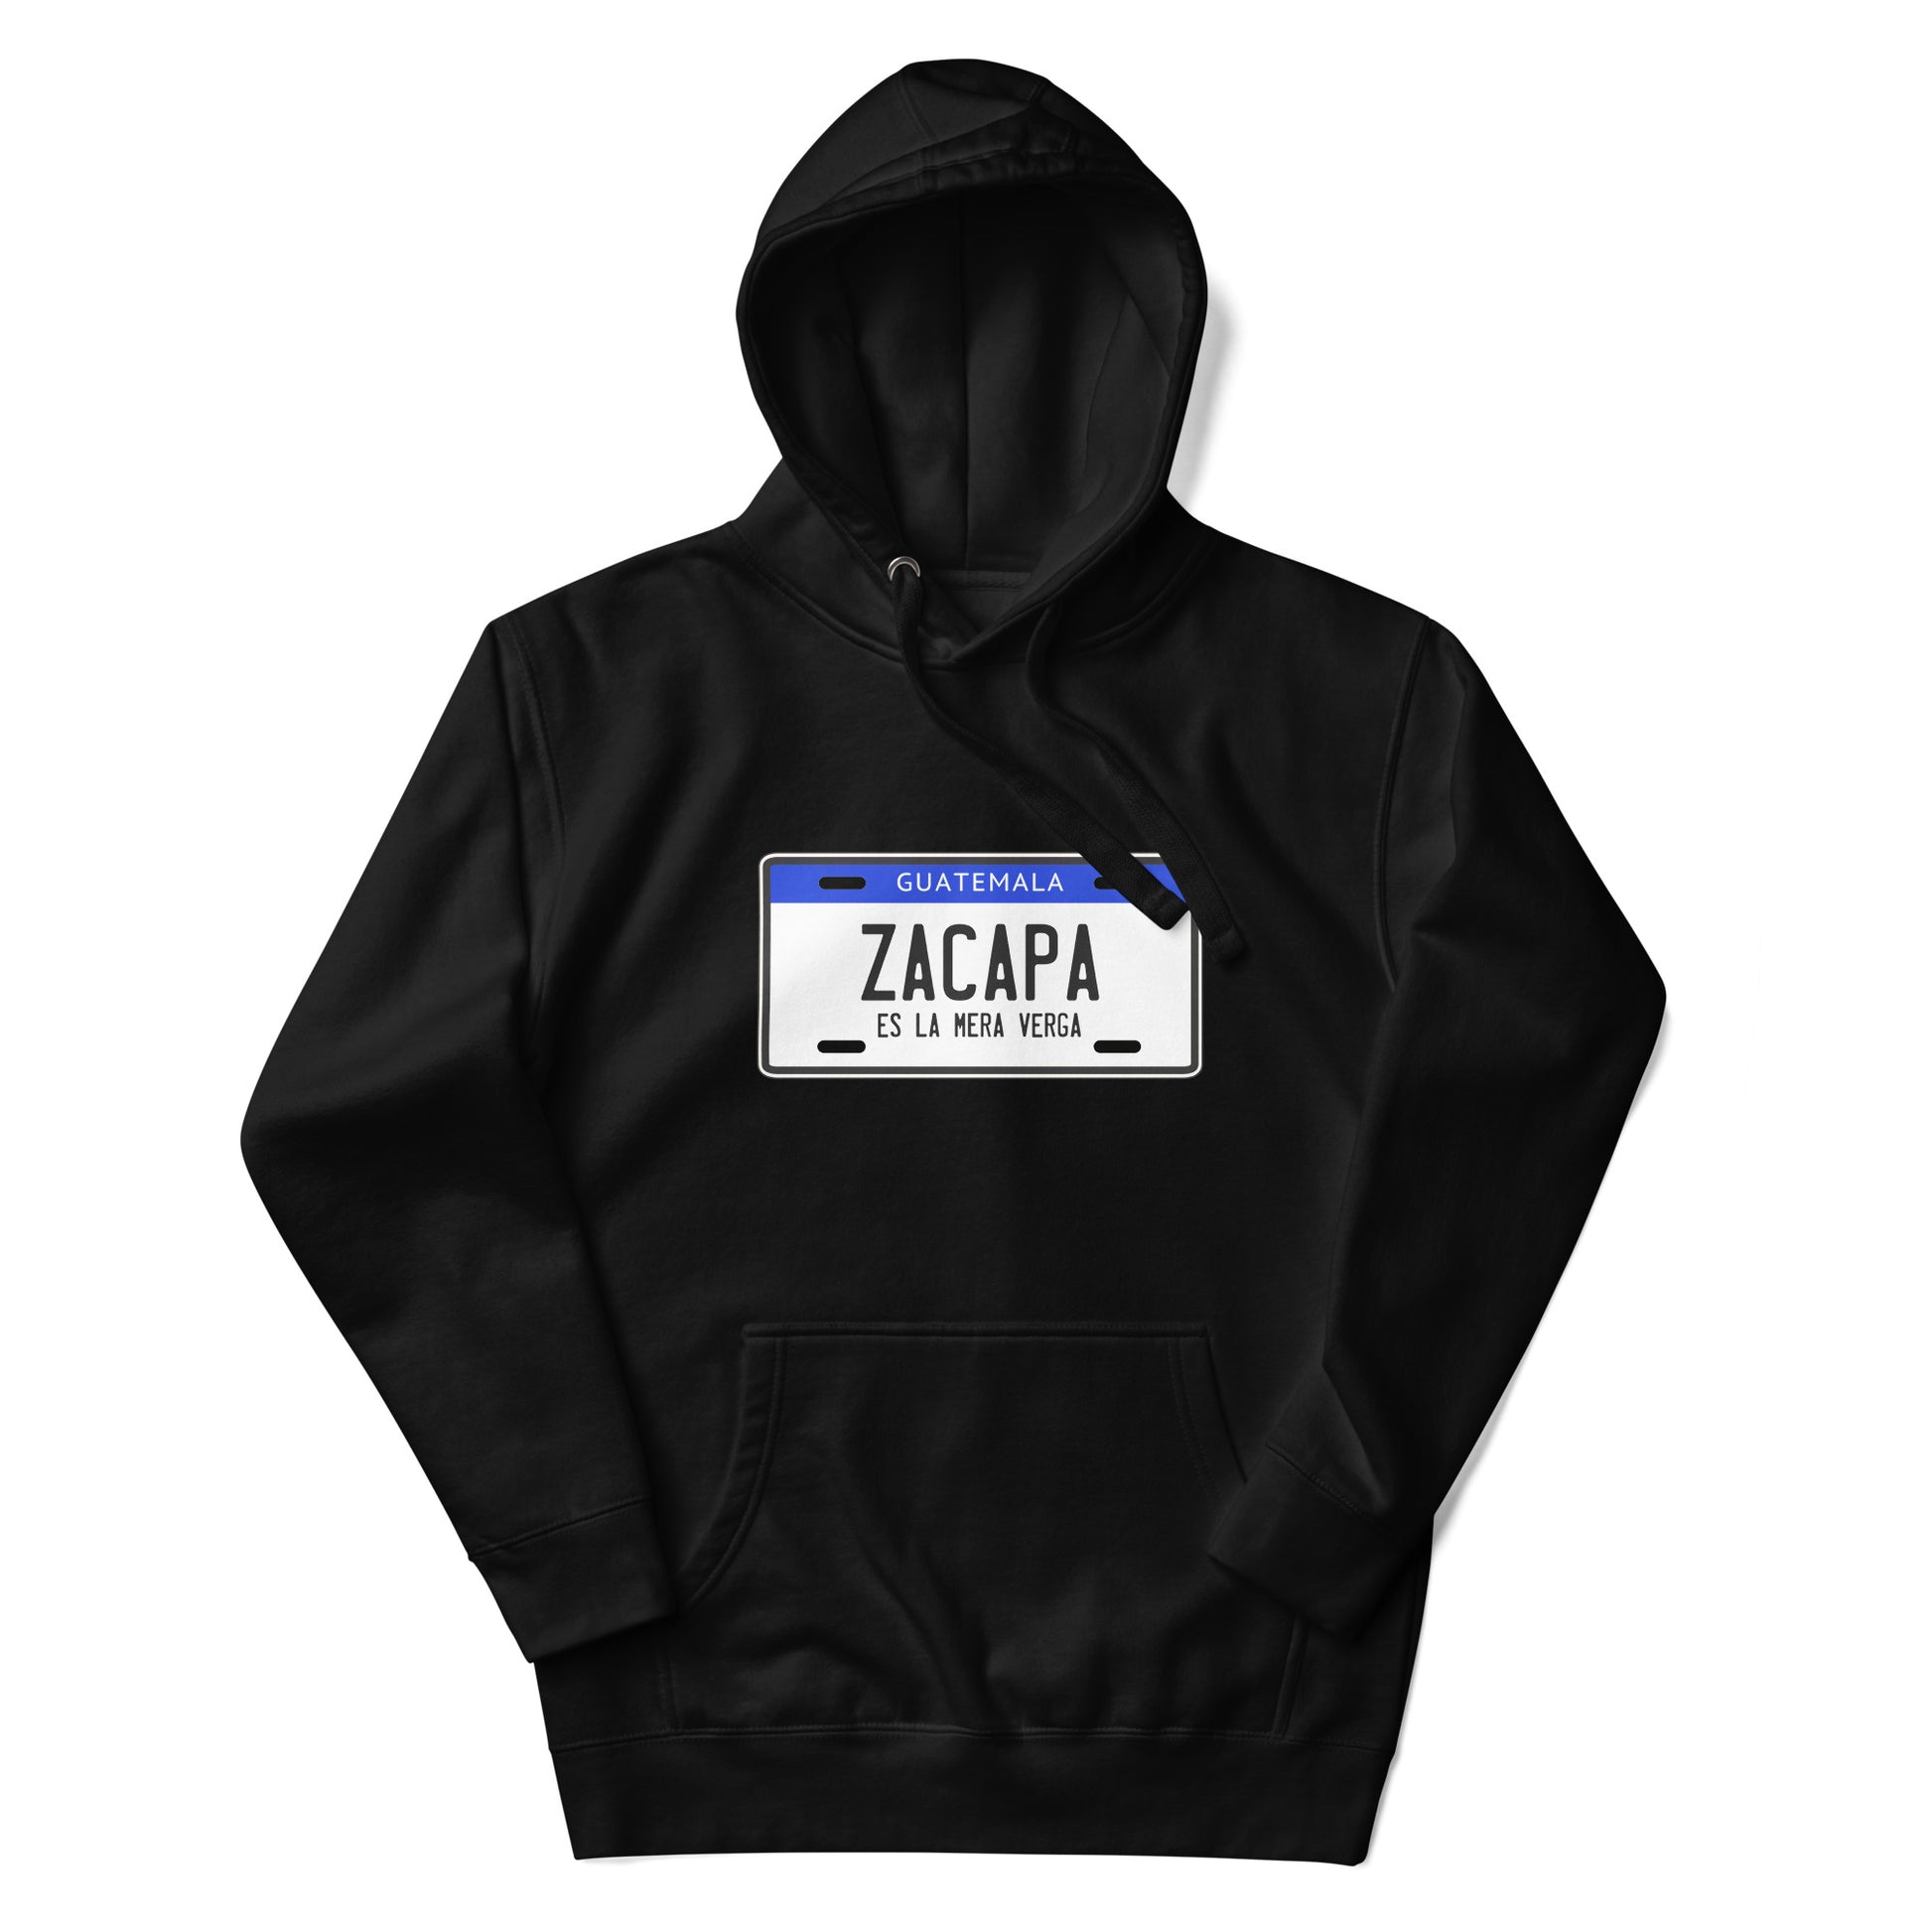 Hoodie de Zacapa es la V... ,Descubre calidad excepcional y estampados duraderos. Encuentra estilo y orgullo en cada prenda, compra ahora!